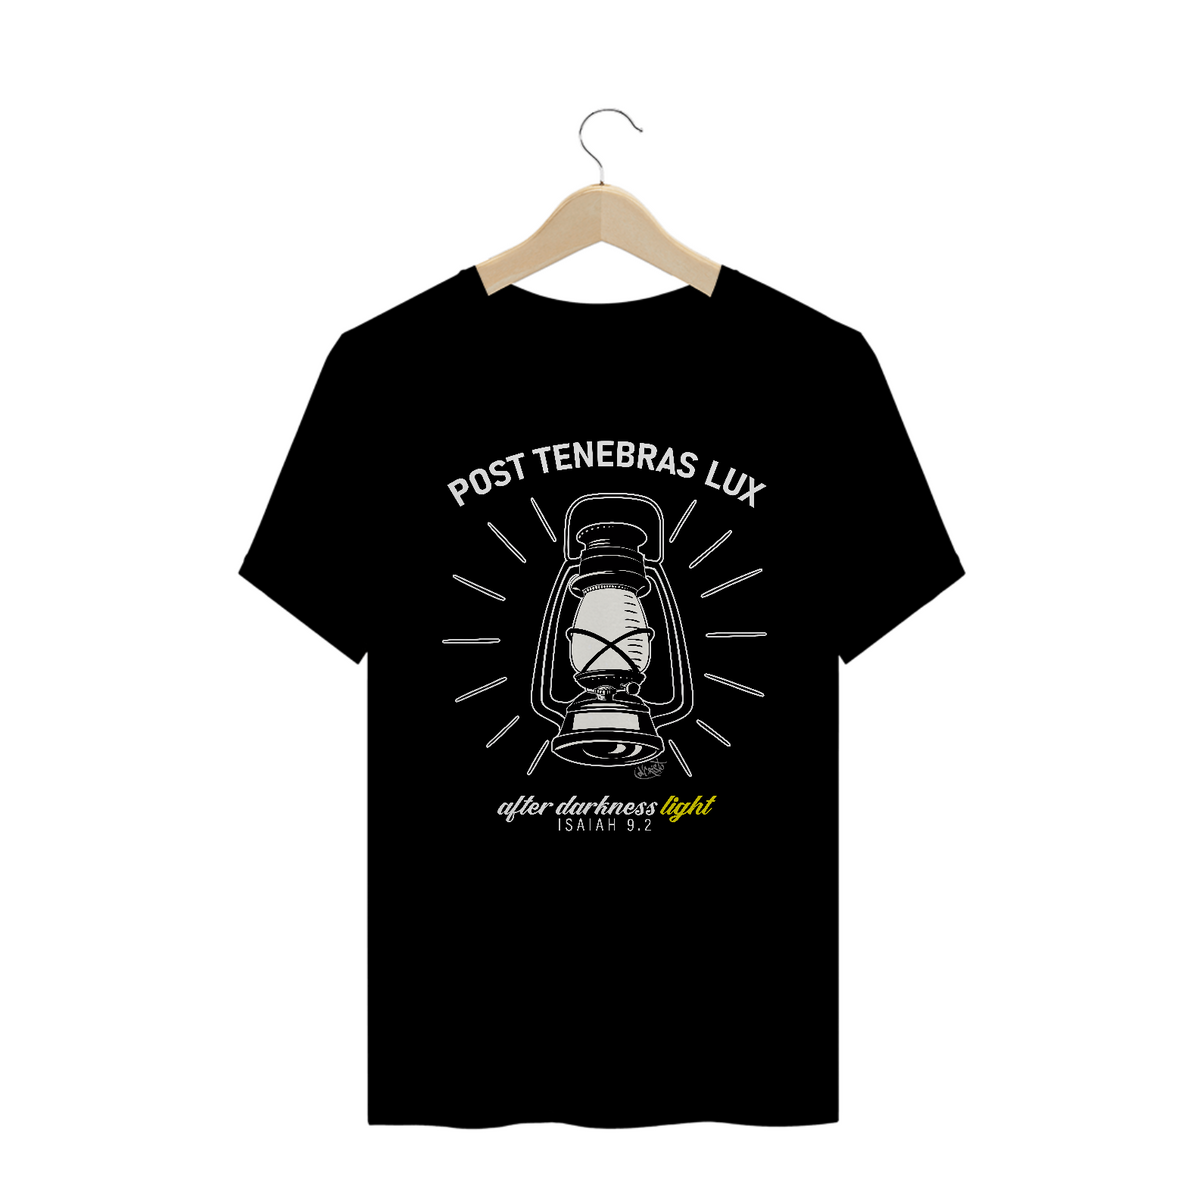 Nome do produto: Camiseta Post Tenebras Lux (cores escuras)